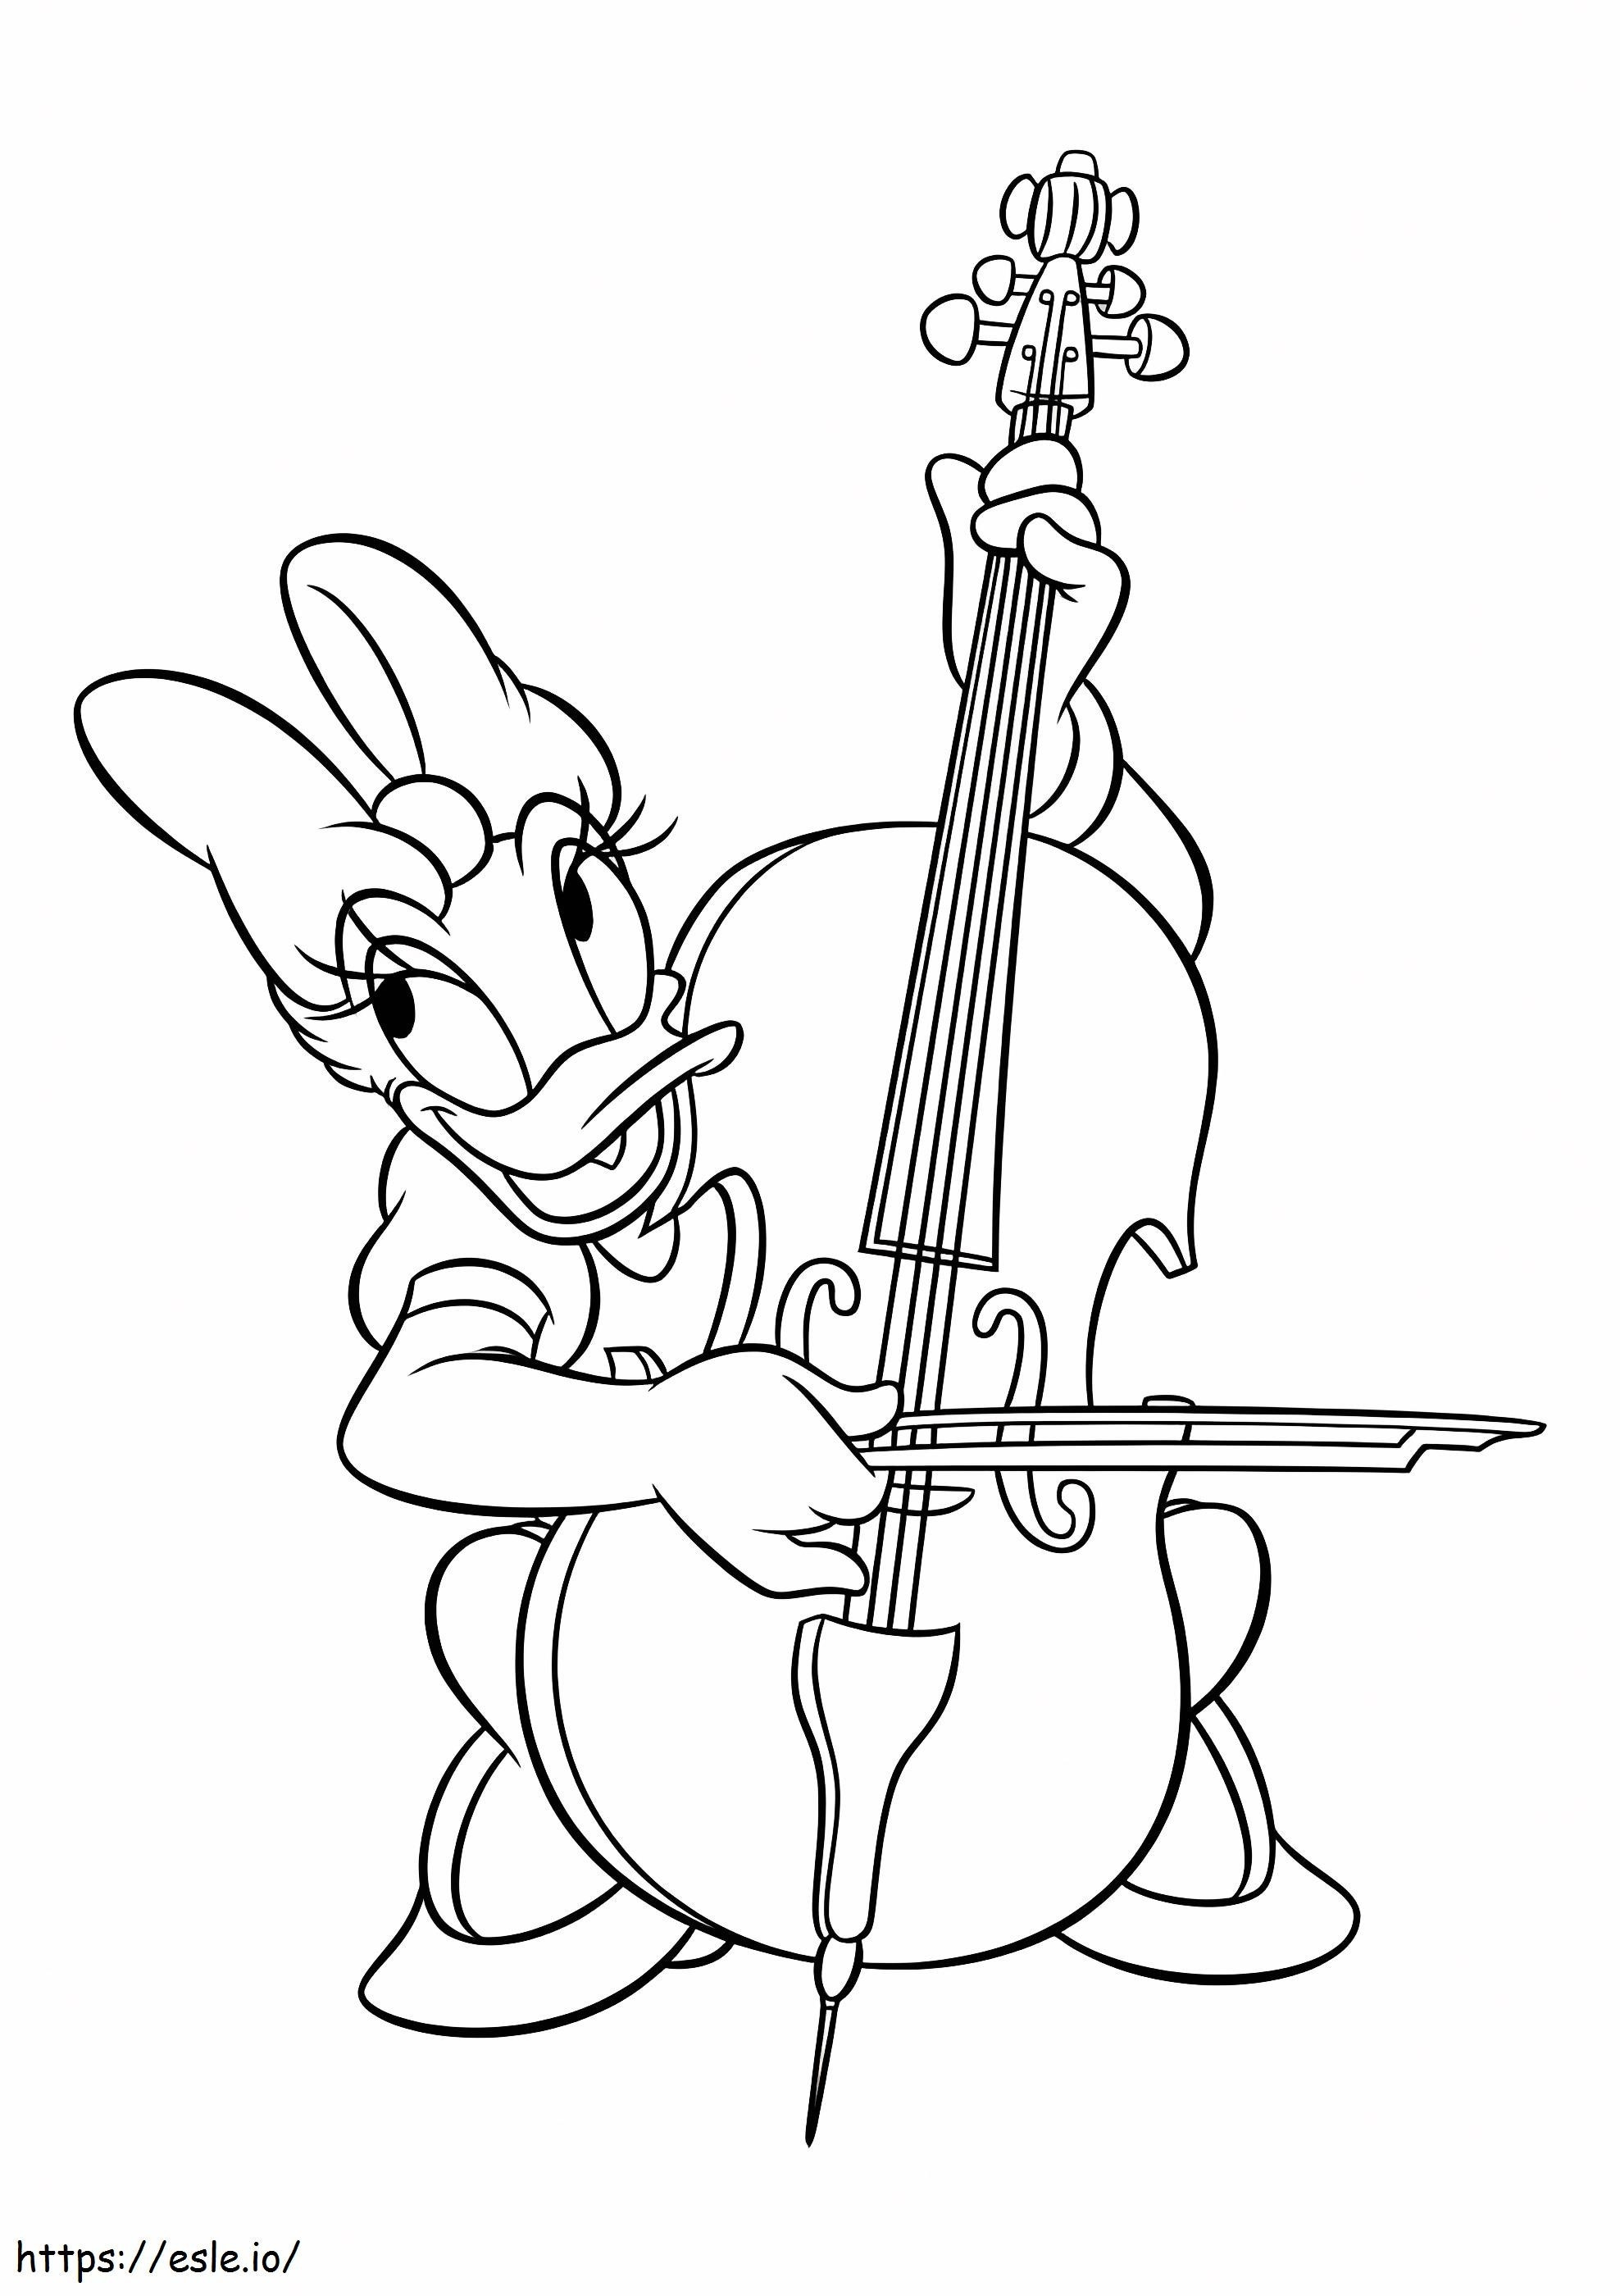 Daisy Duck spielt Cello ausmalbilder